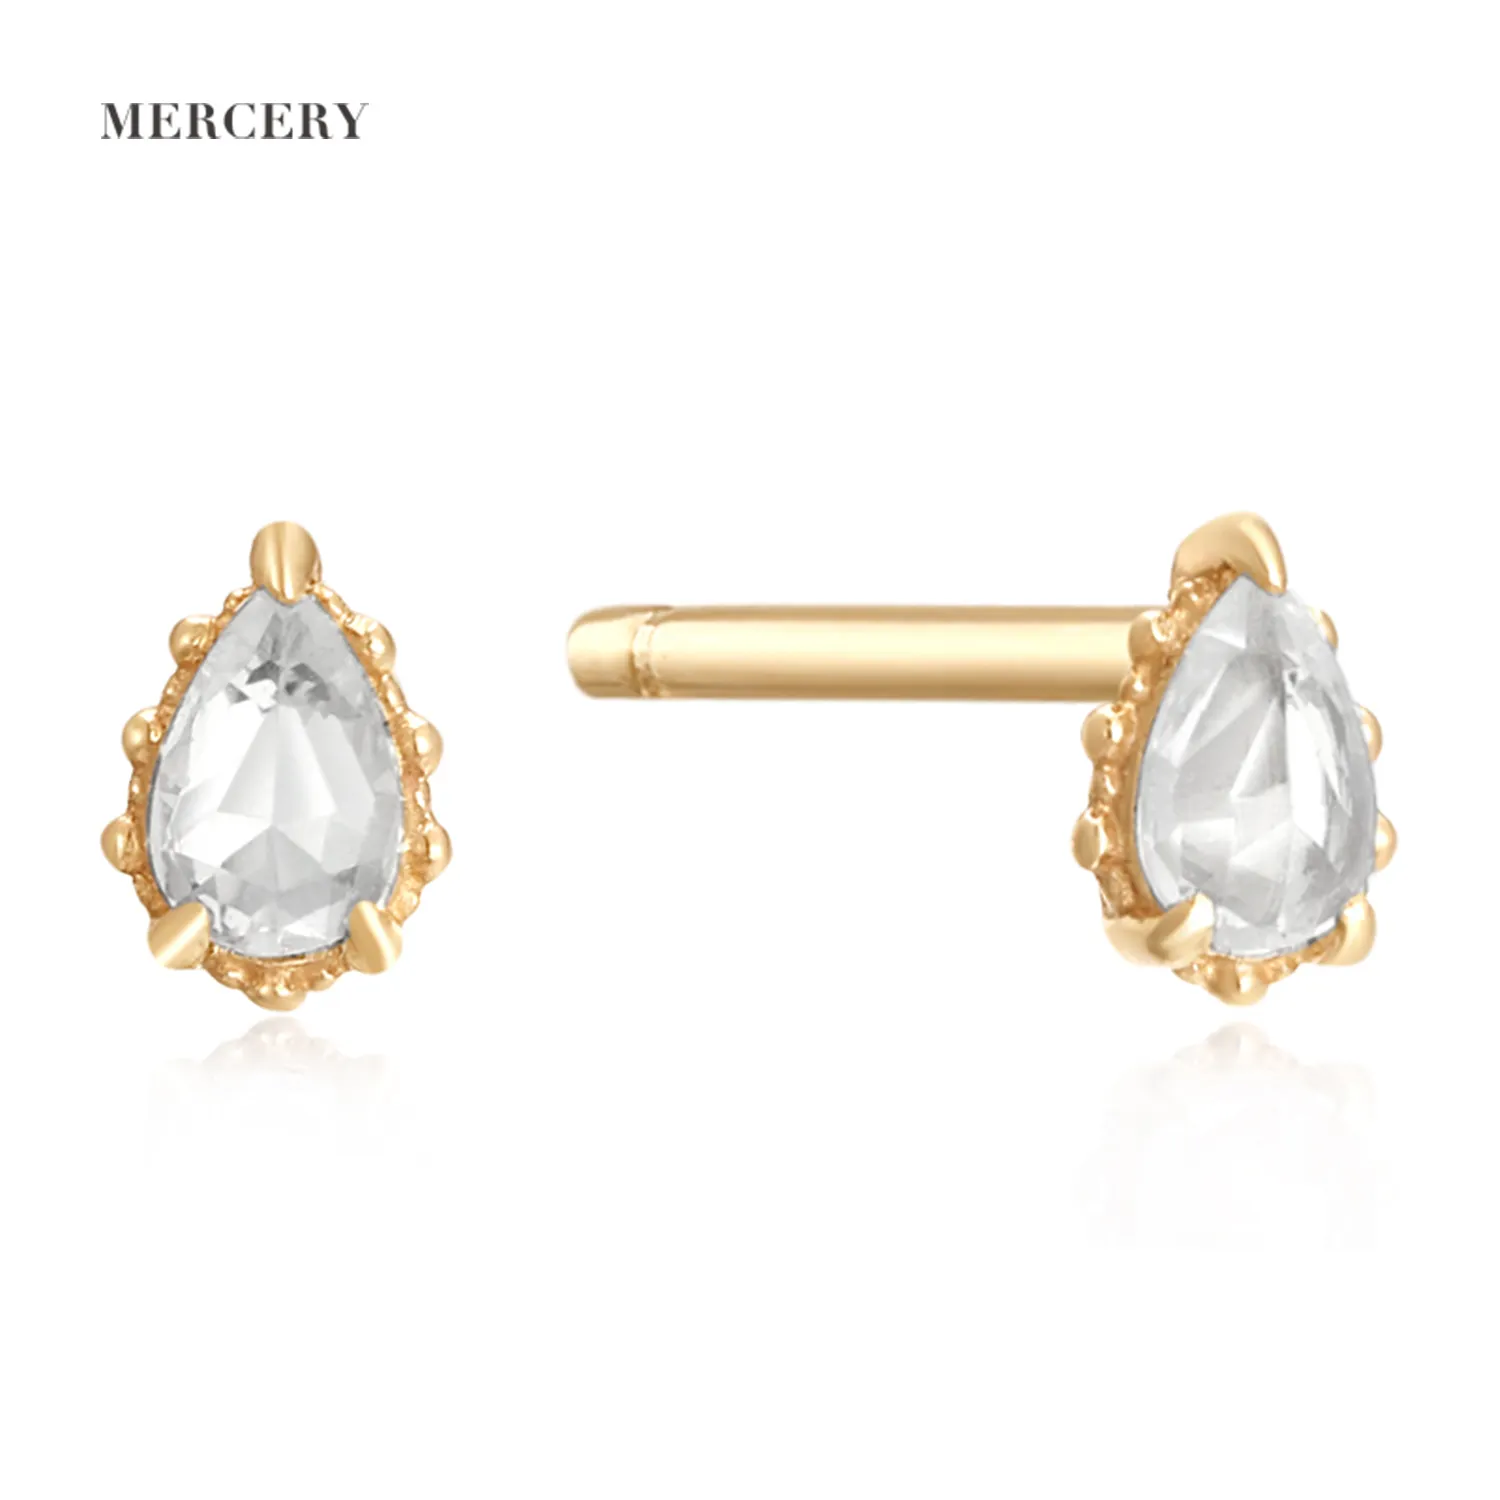 Mercery Natural Gem stone Minimalist Jewelry Zierliche Ohr stecker Saphir schmuck 14 Karat Solid Gold Ohr stecker für Frauen